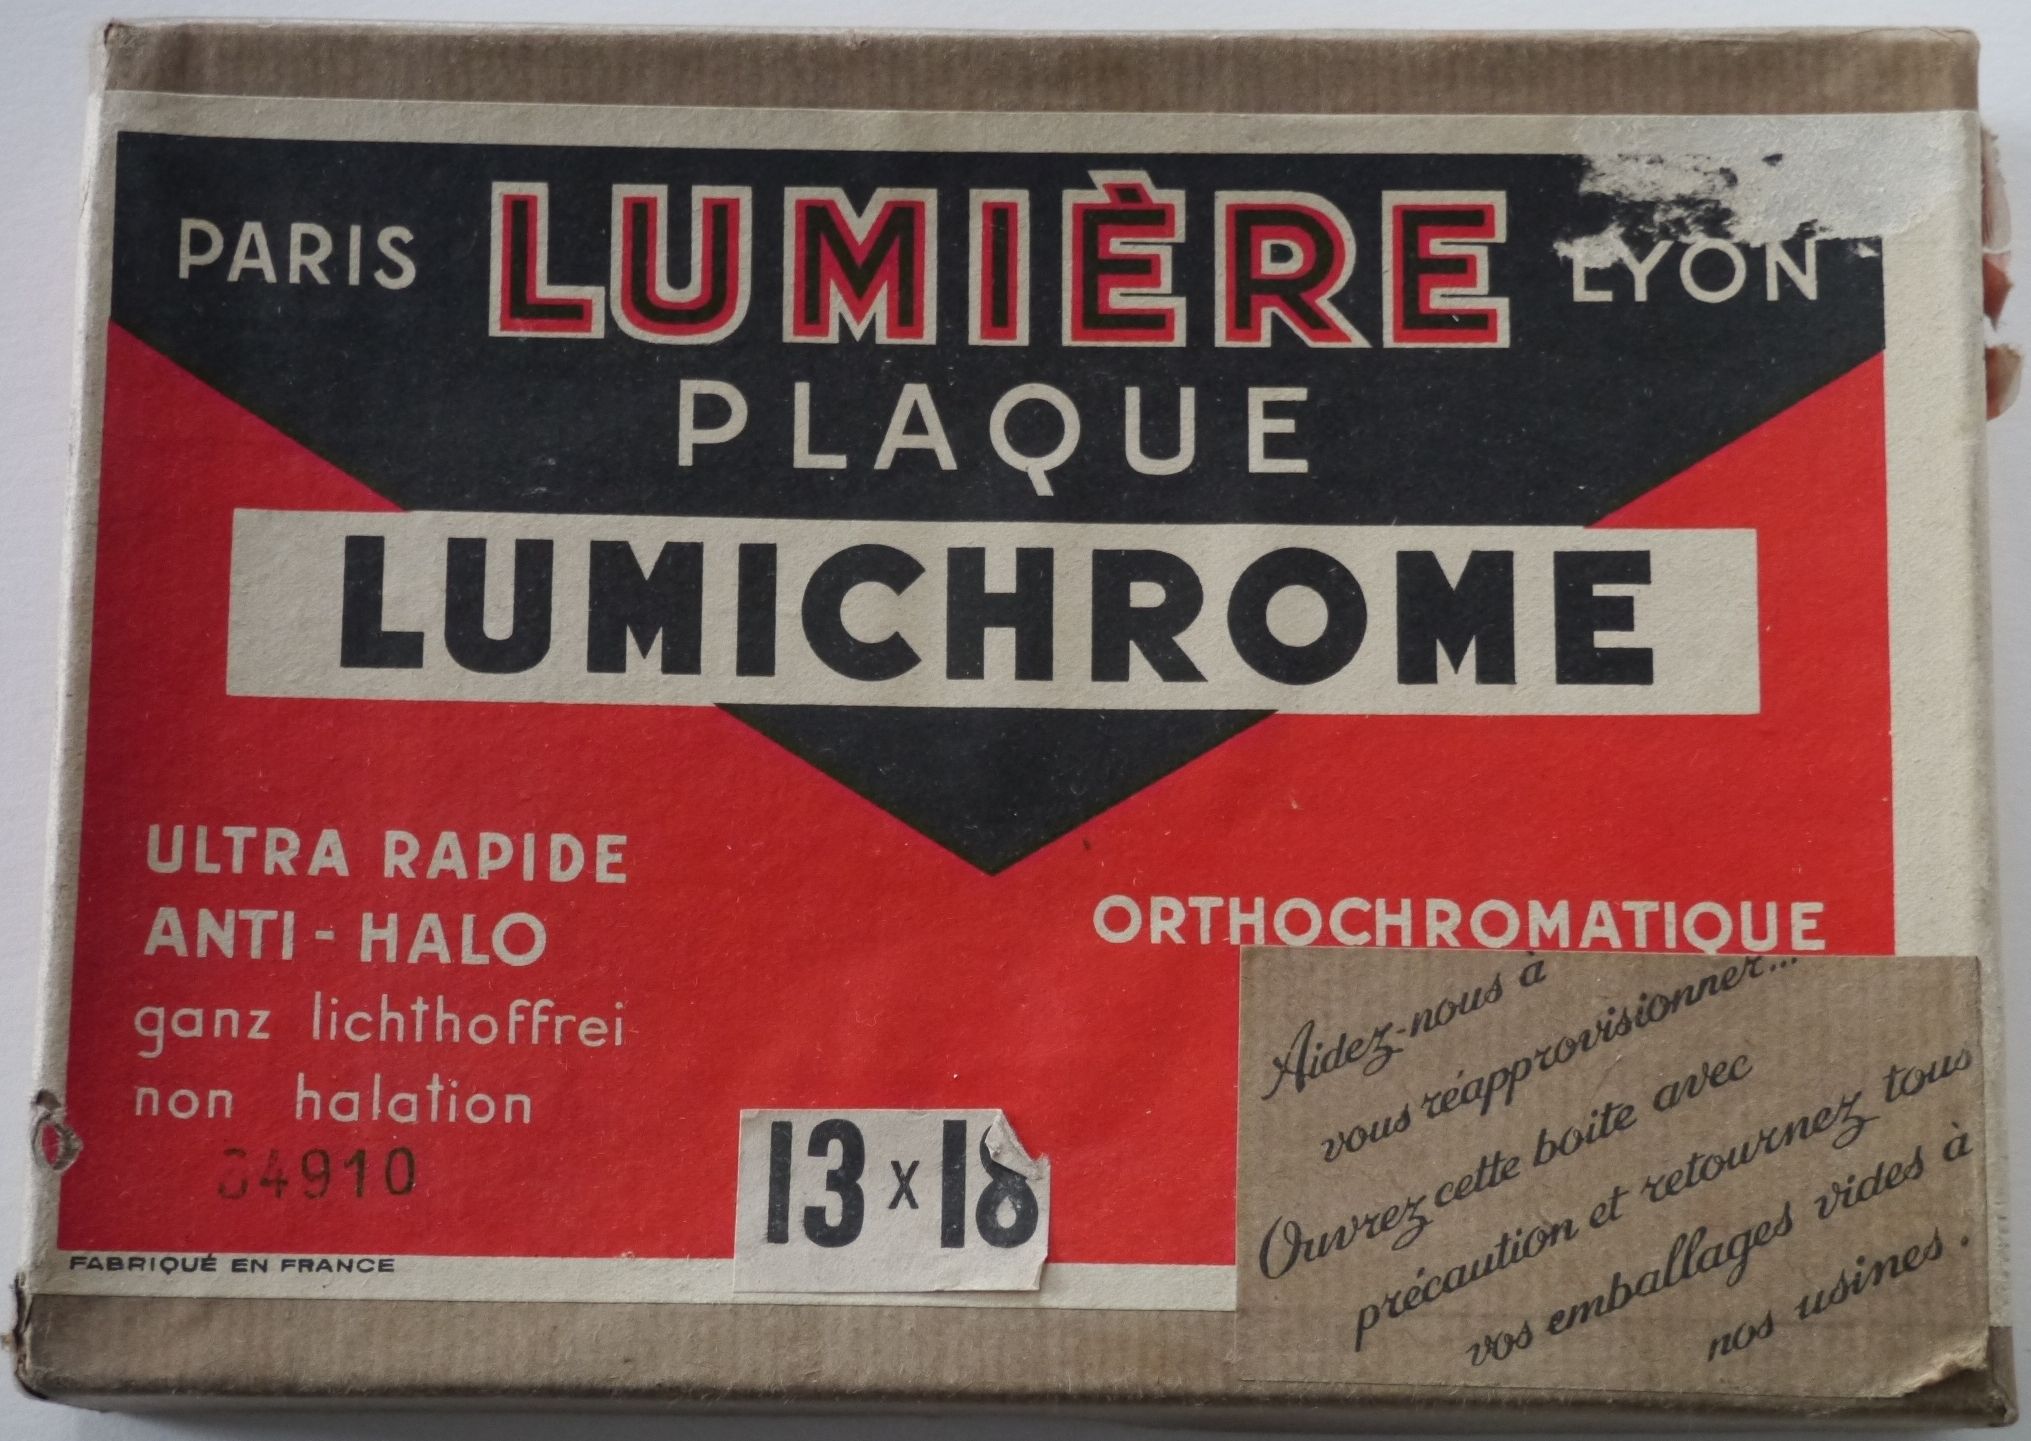 Plaque Lumichrome - format 13x18 cm